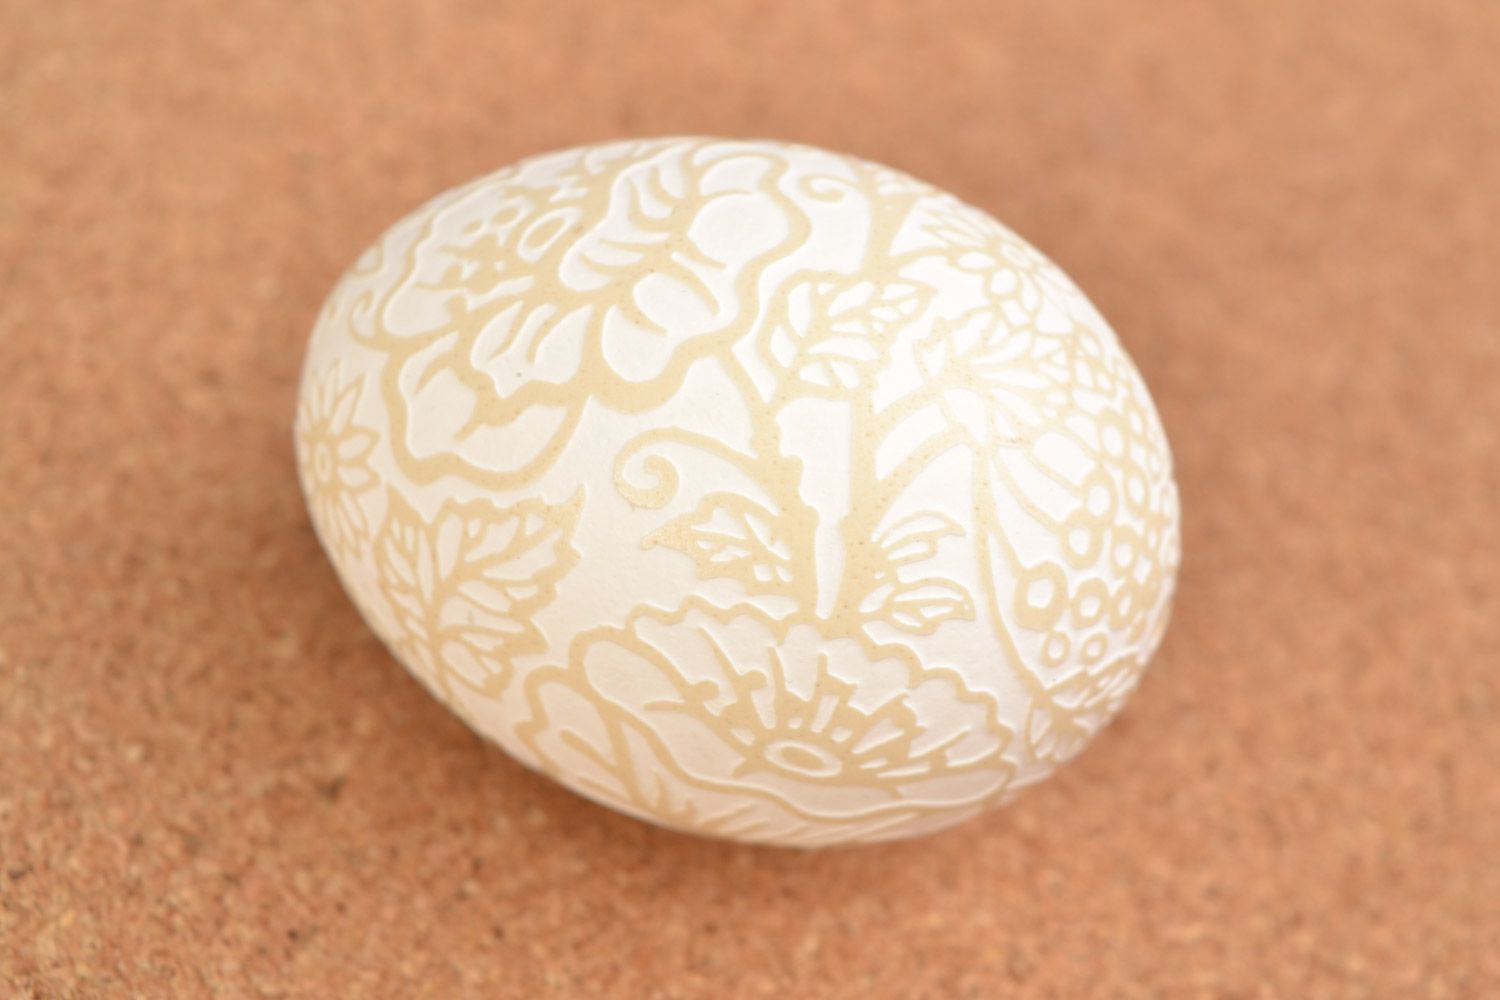 Handmade patterned Easter chicken egg for decor vinegar etching photo 1